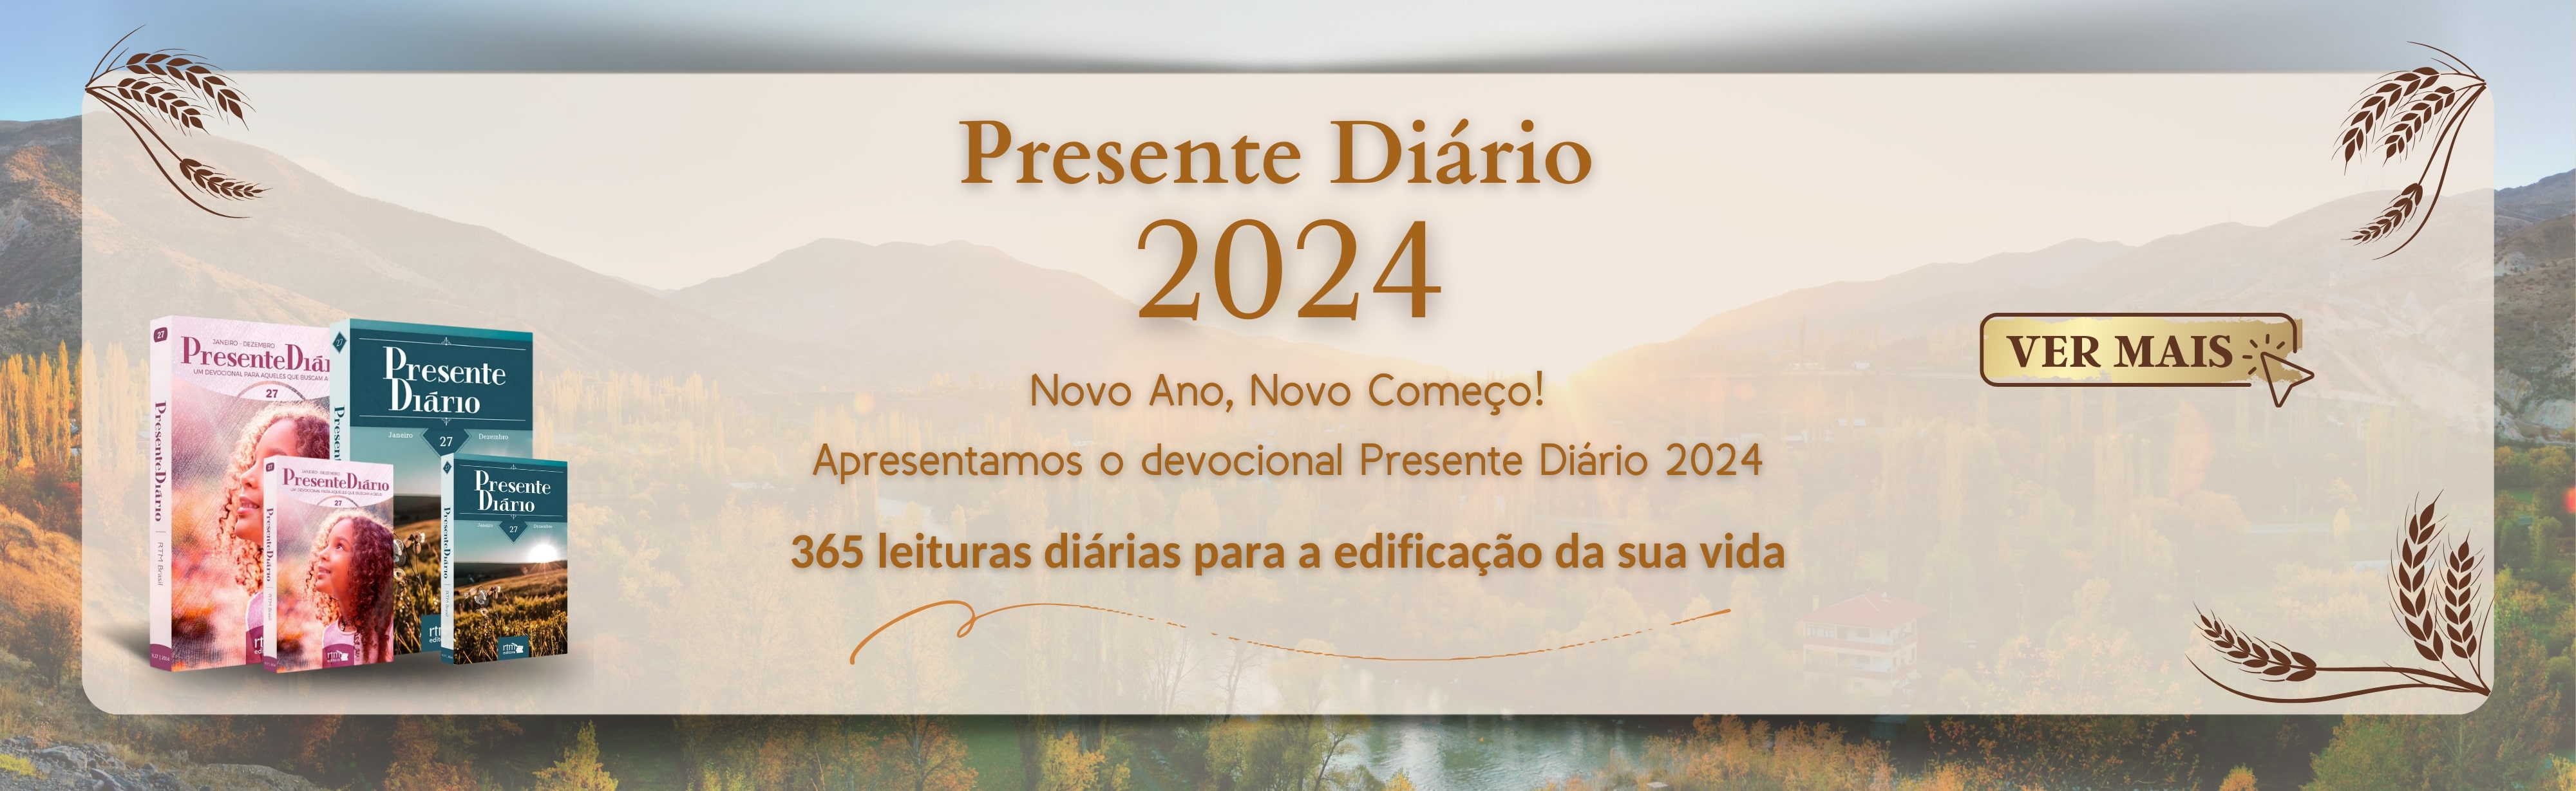 banner desktop presente diario 2024